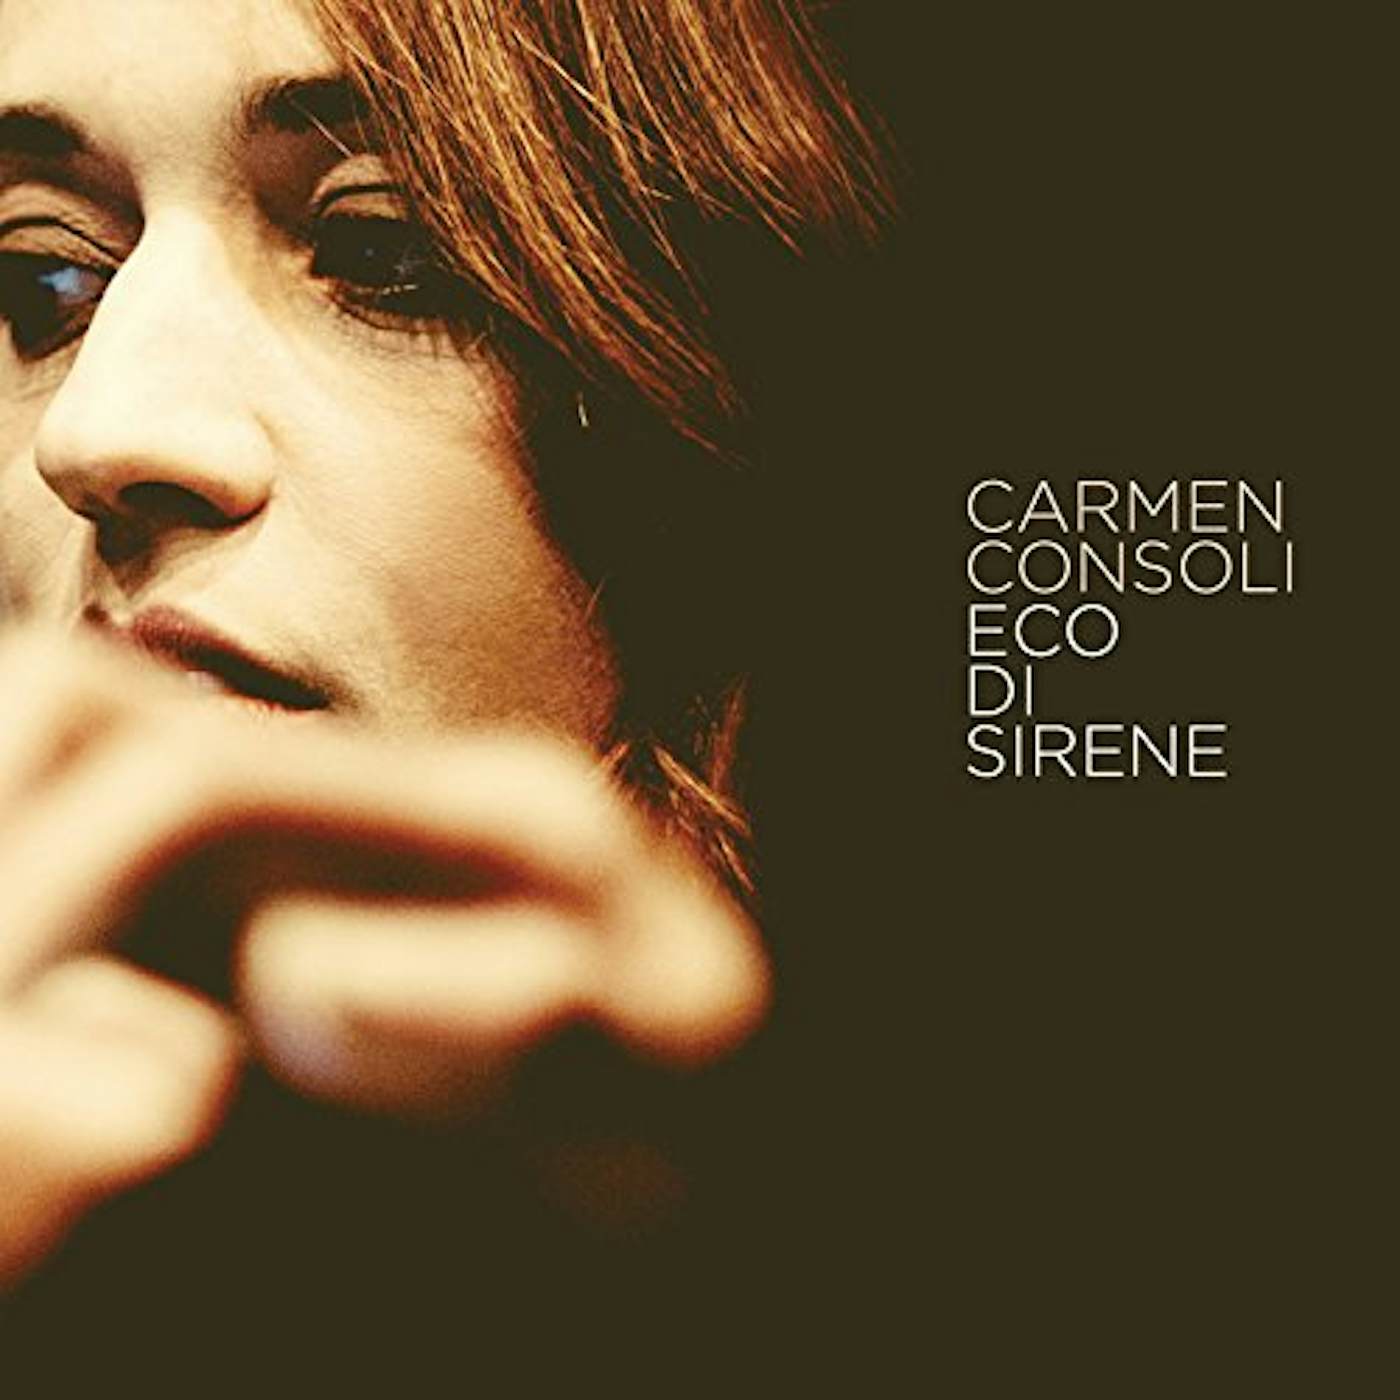 Carmen Consoli ECO DI SIRENE CD